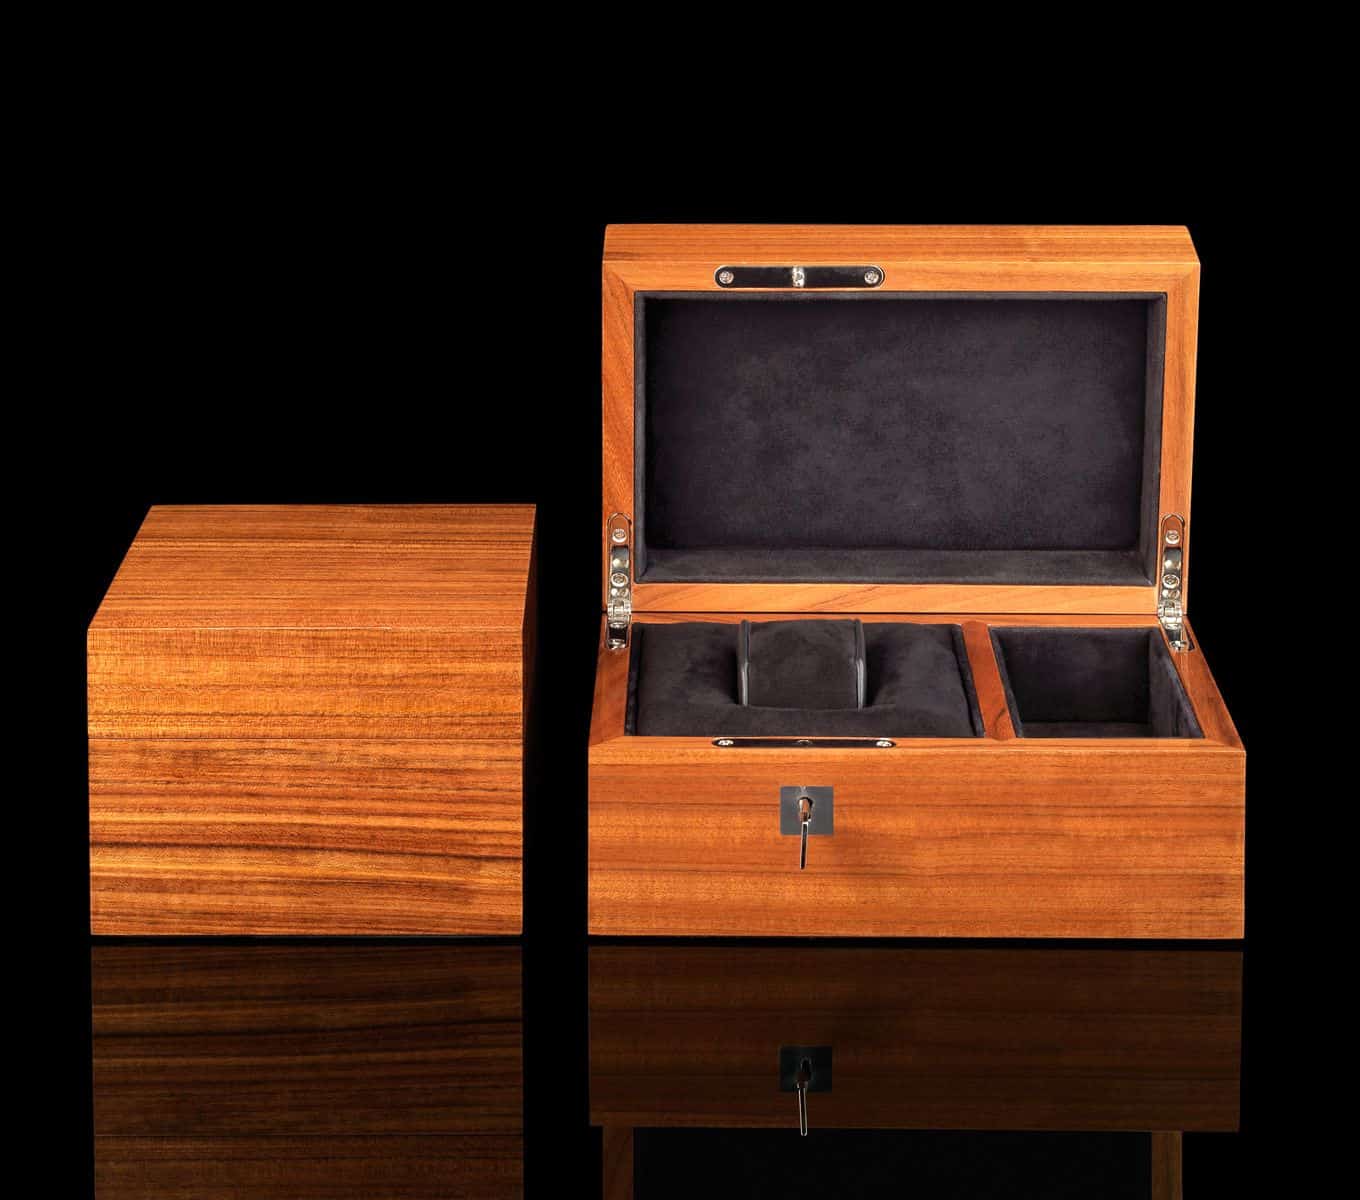 Wooden Studio Co. Wooden Watch Box